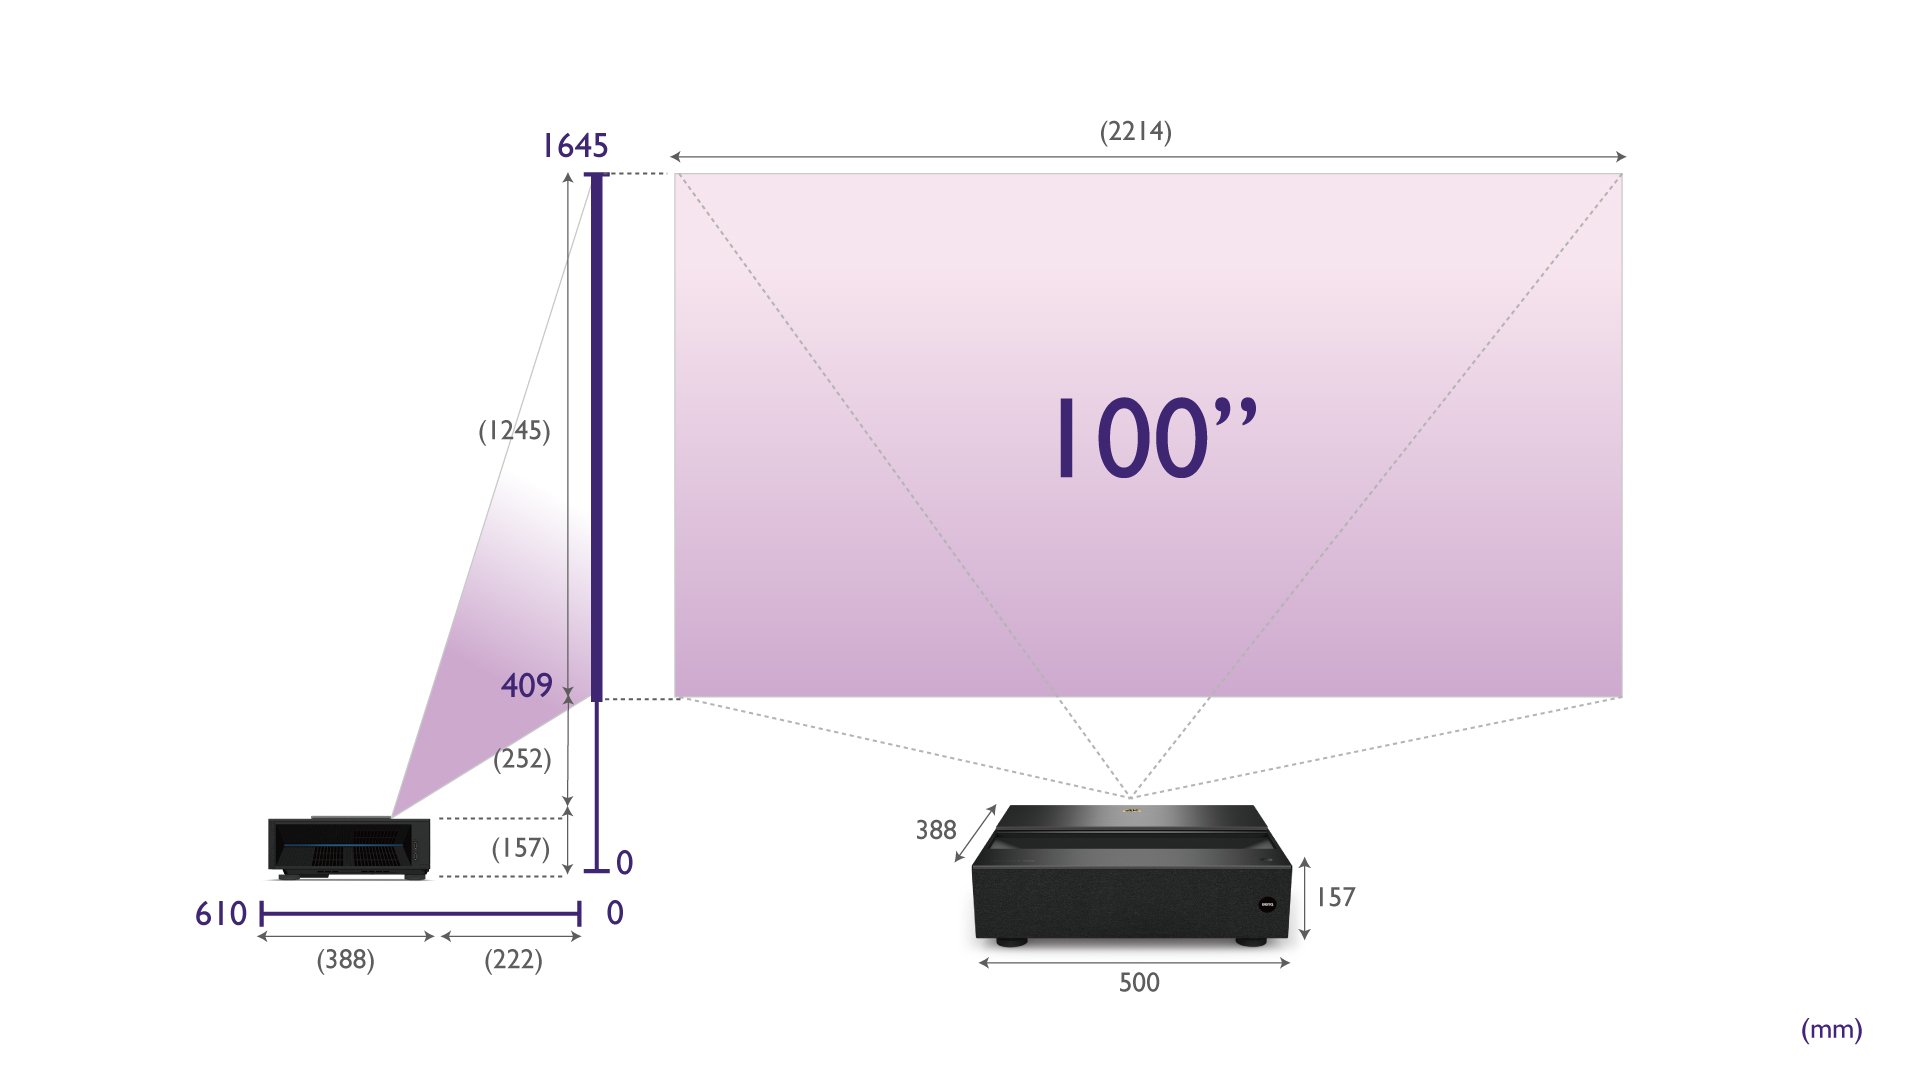 benq 雷射電視 v6000 v6050 的安裝距離指示圖